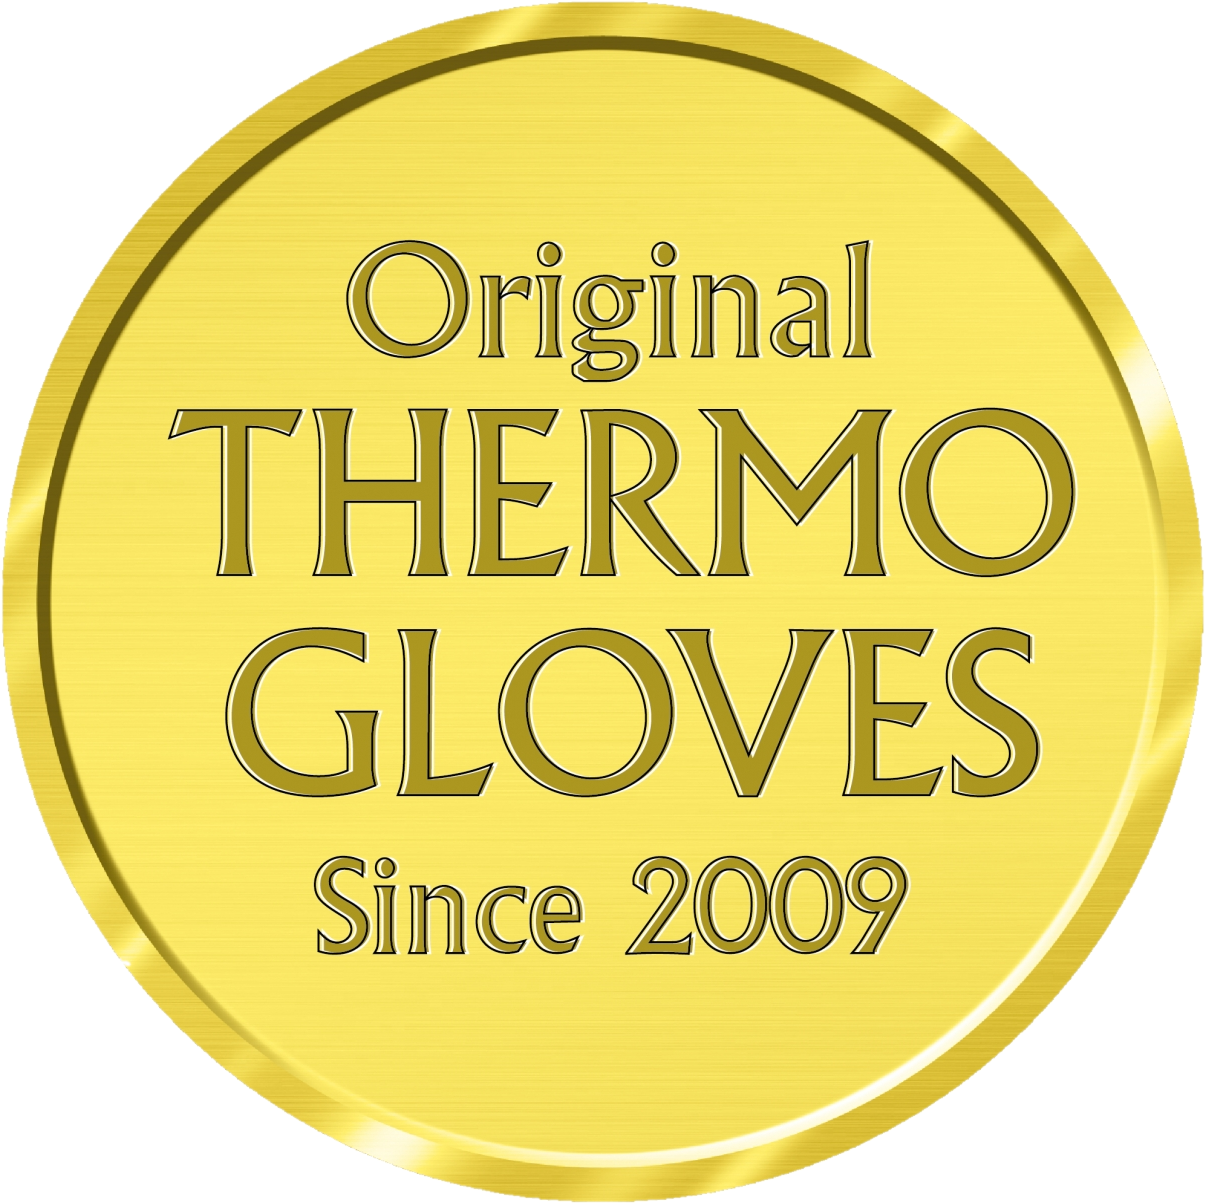 Original Thermo Gloves seit 2009